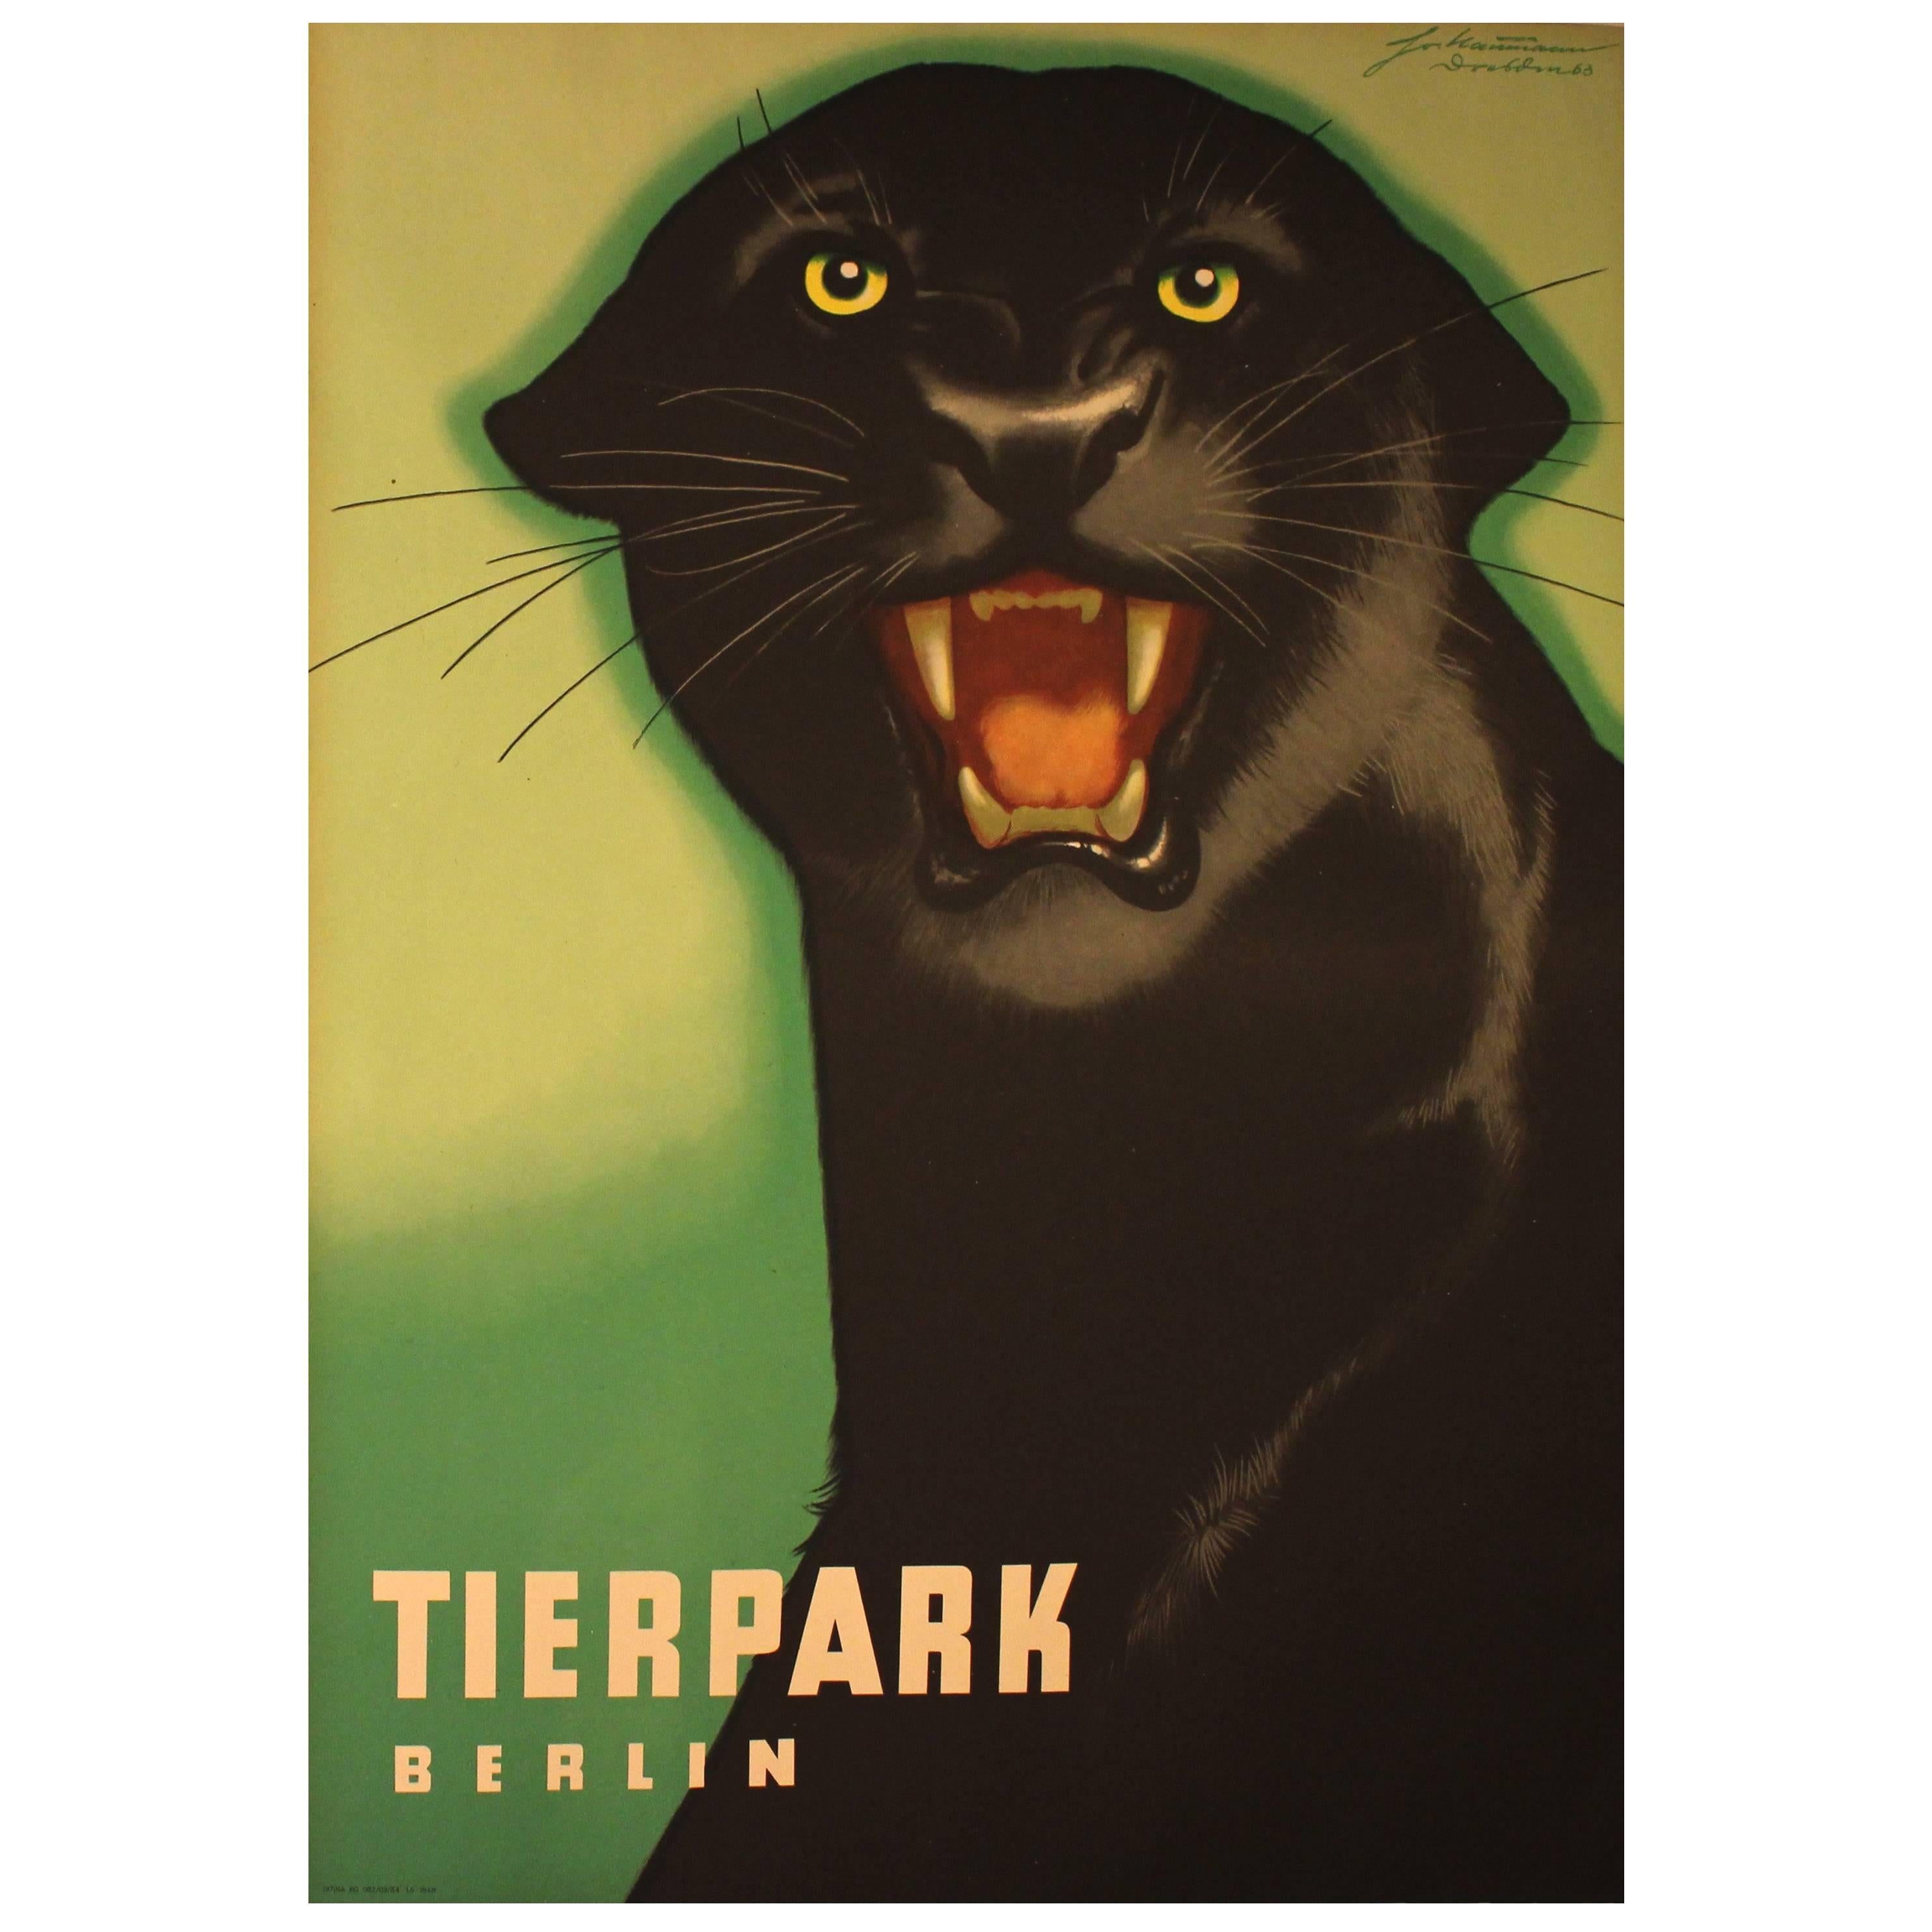 Original 1963 Poster for Berlin Zoo "Tierpark Berlin" Black Panther by Naumann